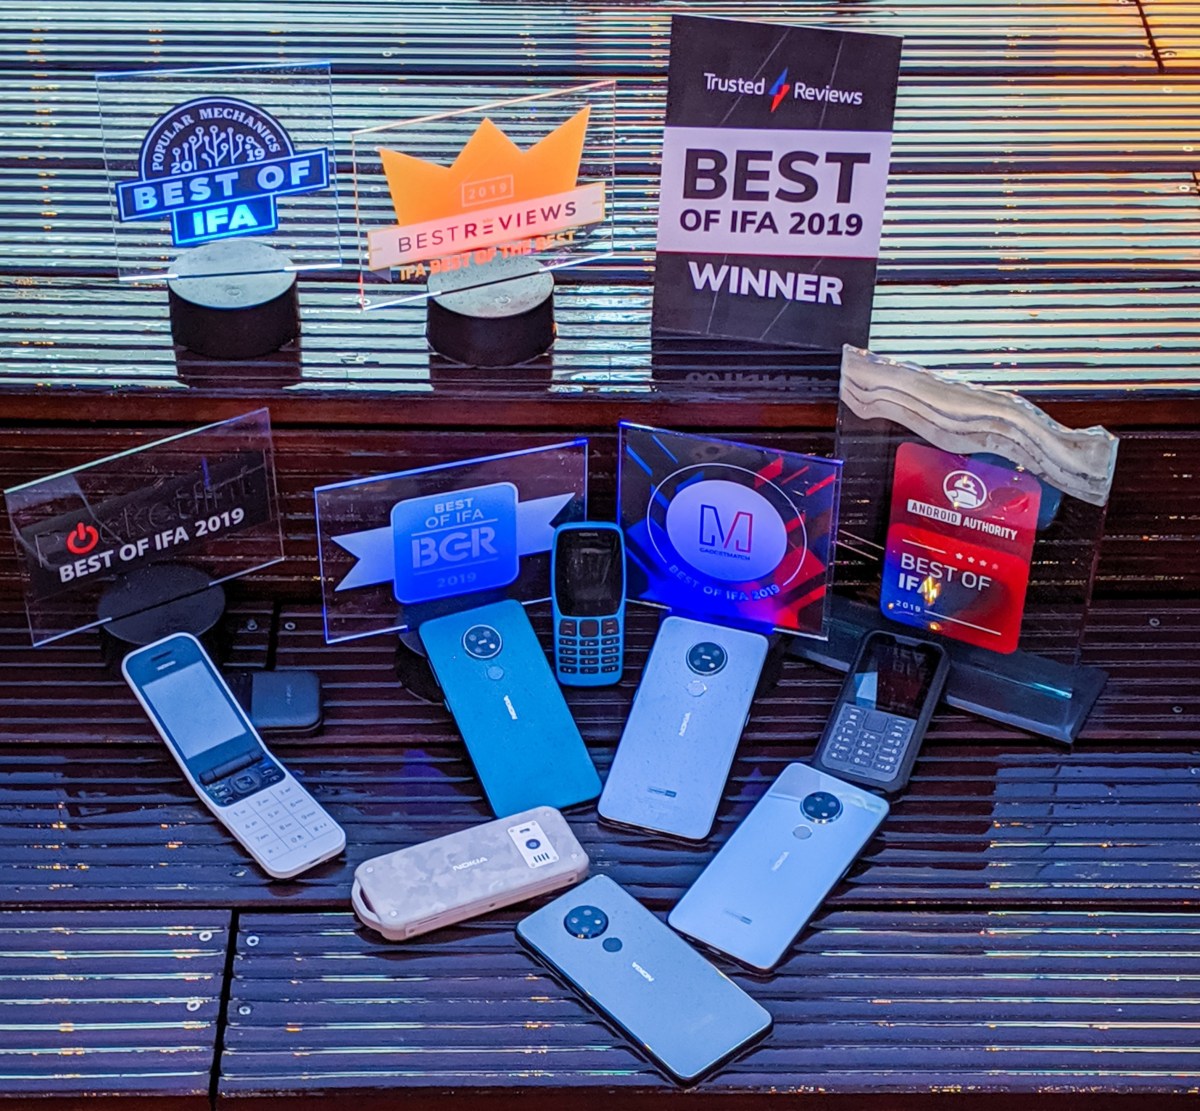 Ponsel Nokia memenangkan banyak penghargaan di IFA2019